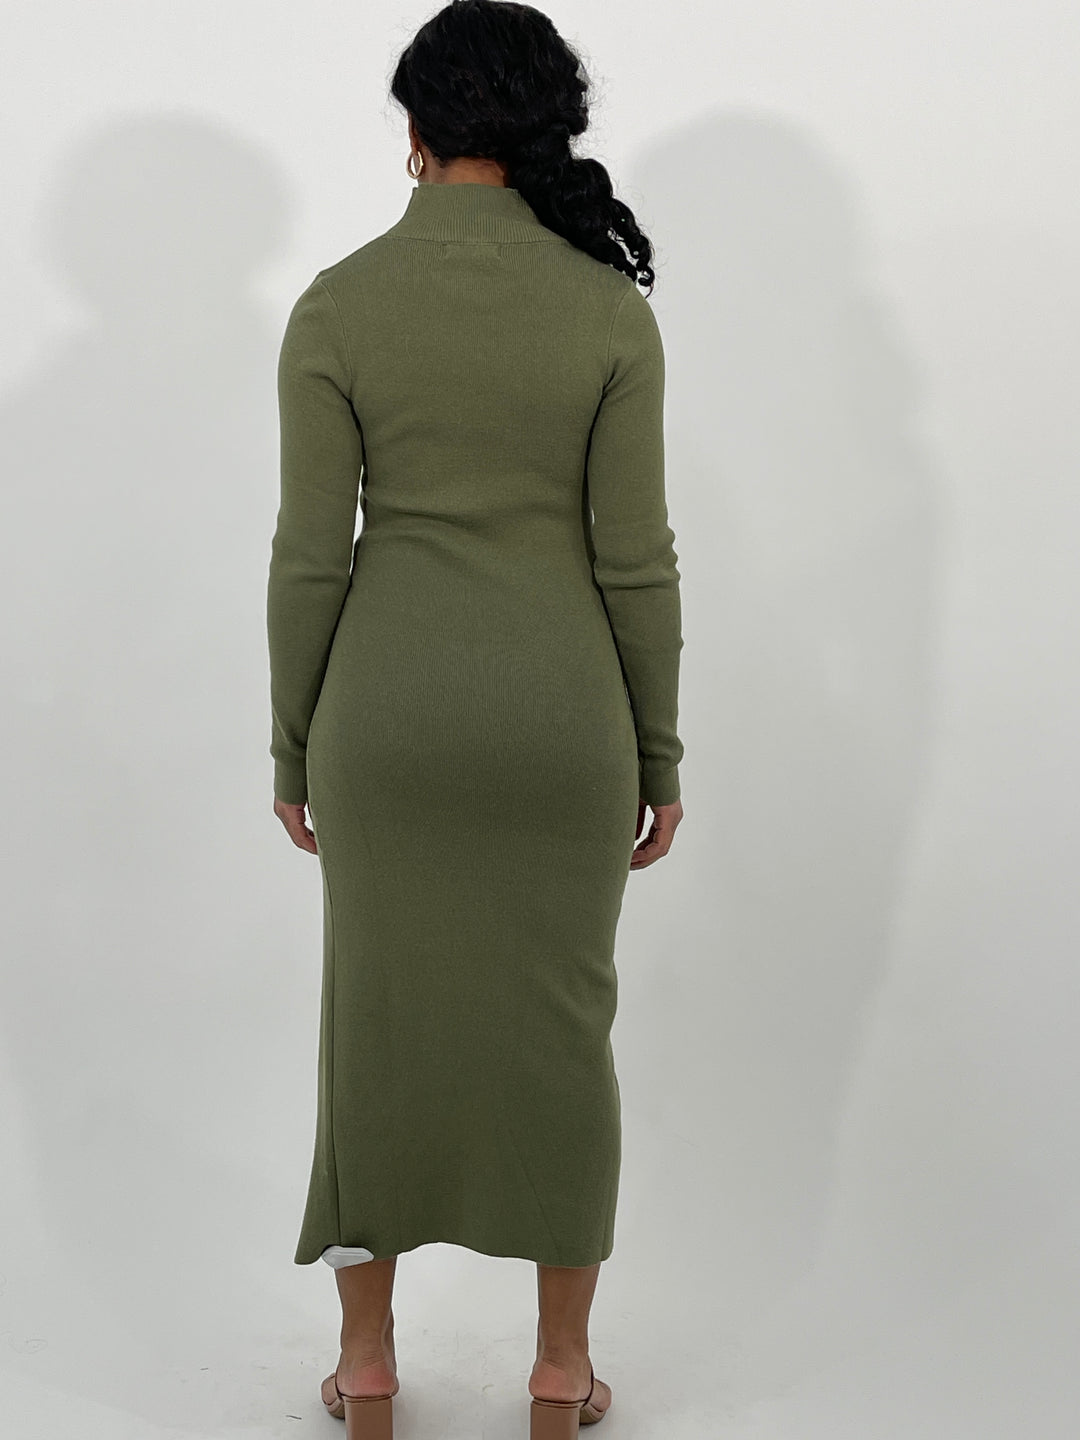 Olive Green Midi Dress